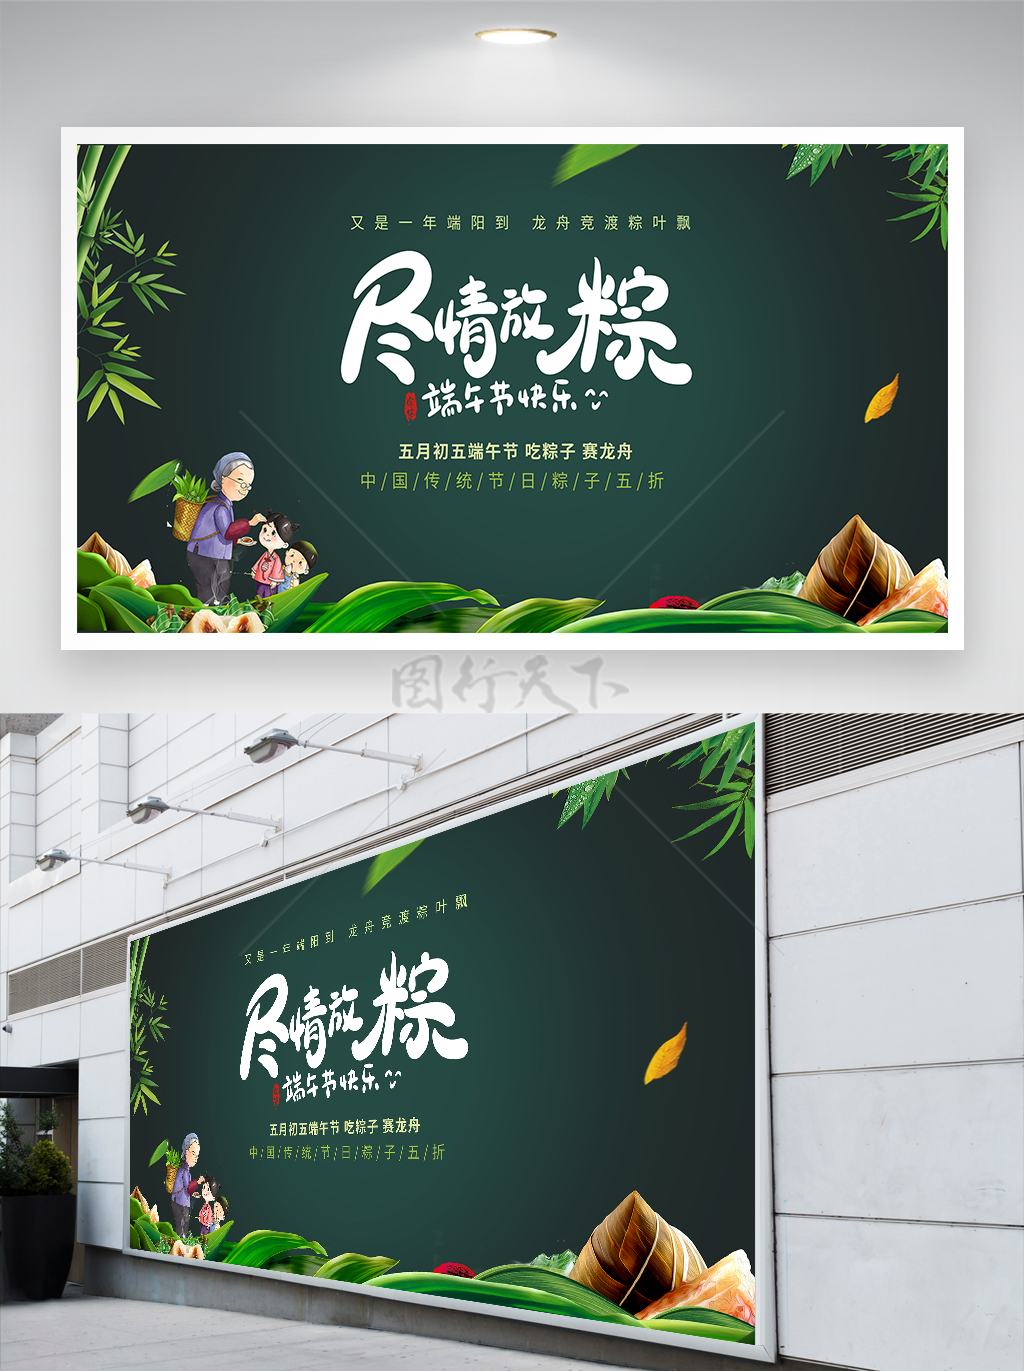 尽情放粽五月初五端午节粽子促销宣传展板